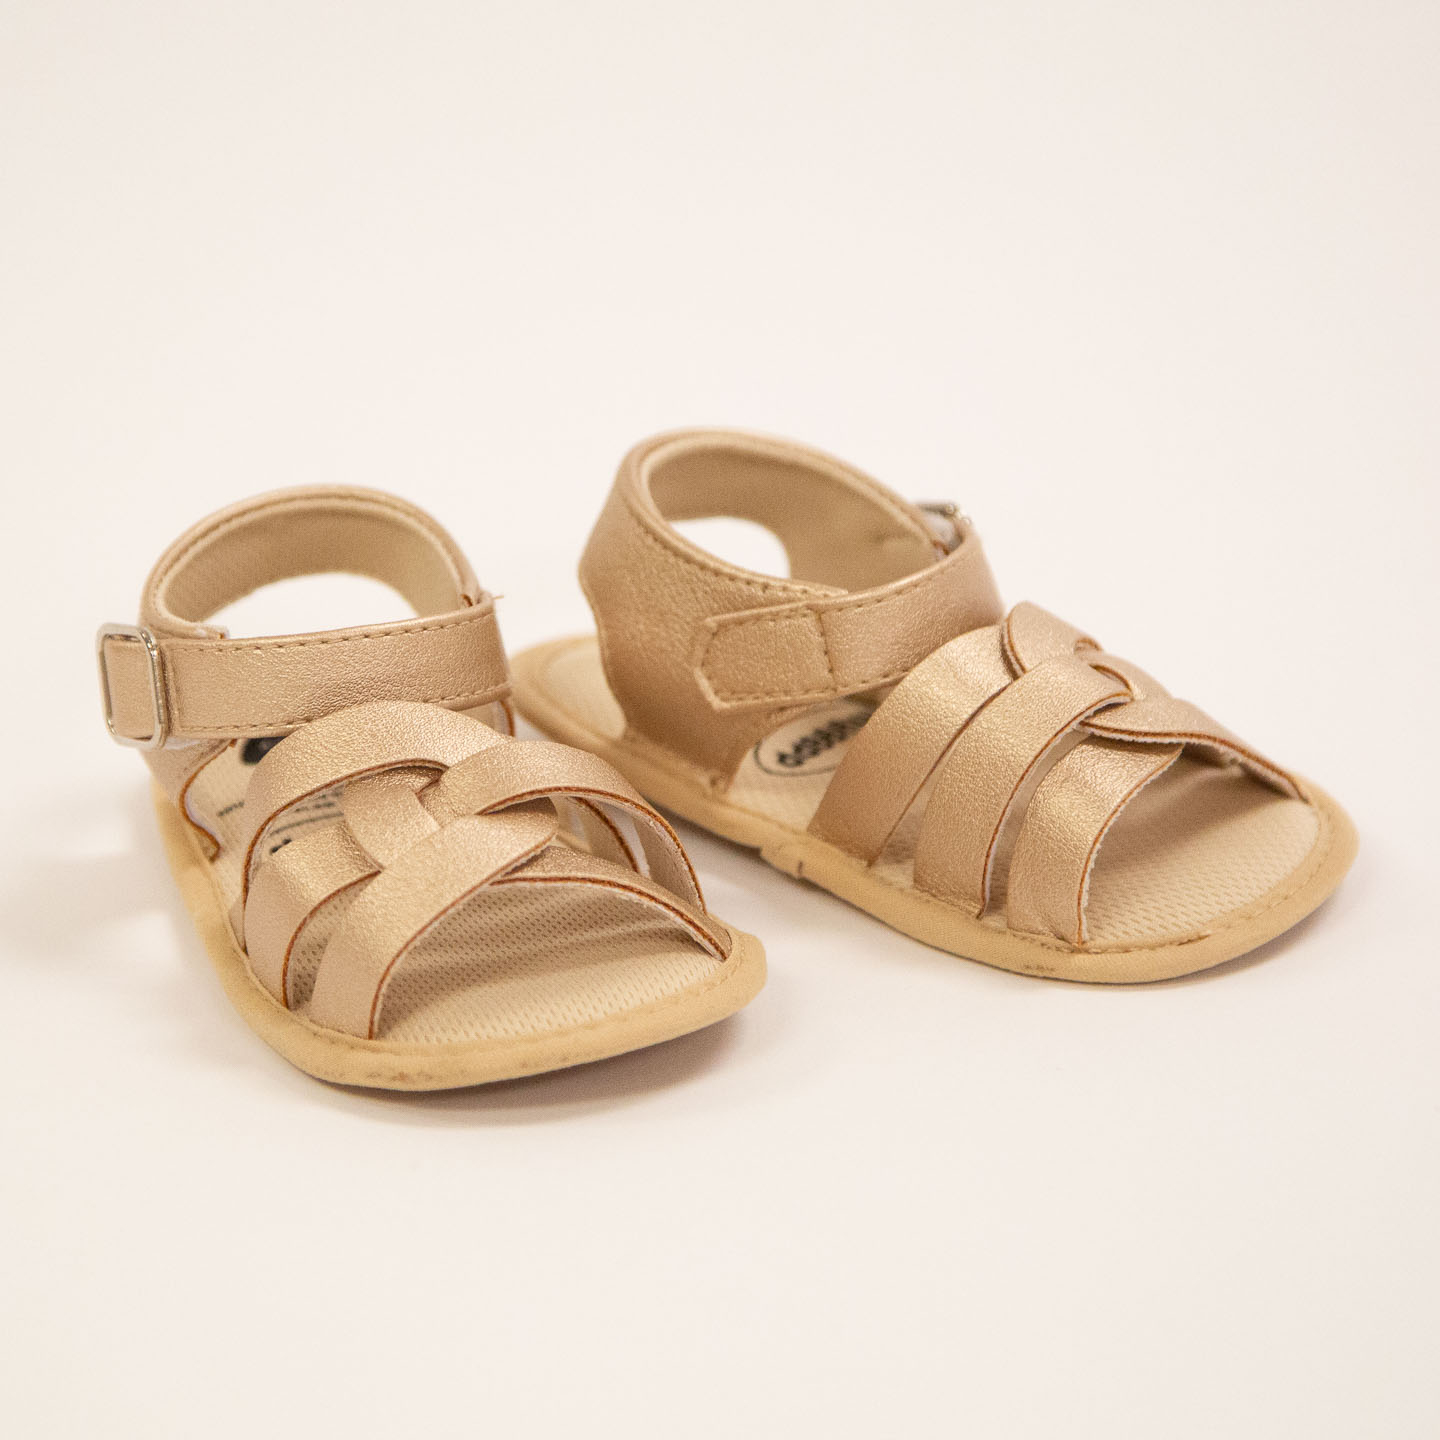 Summer Fringe Sandals - 35